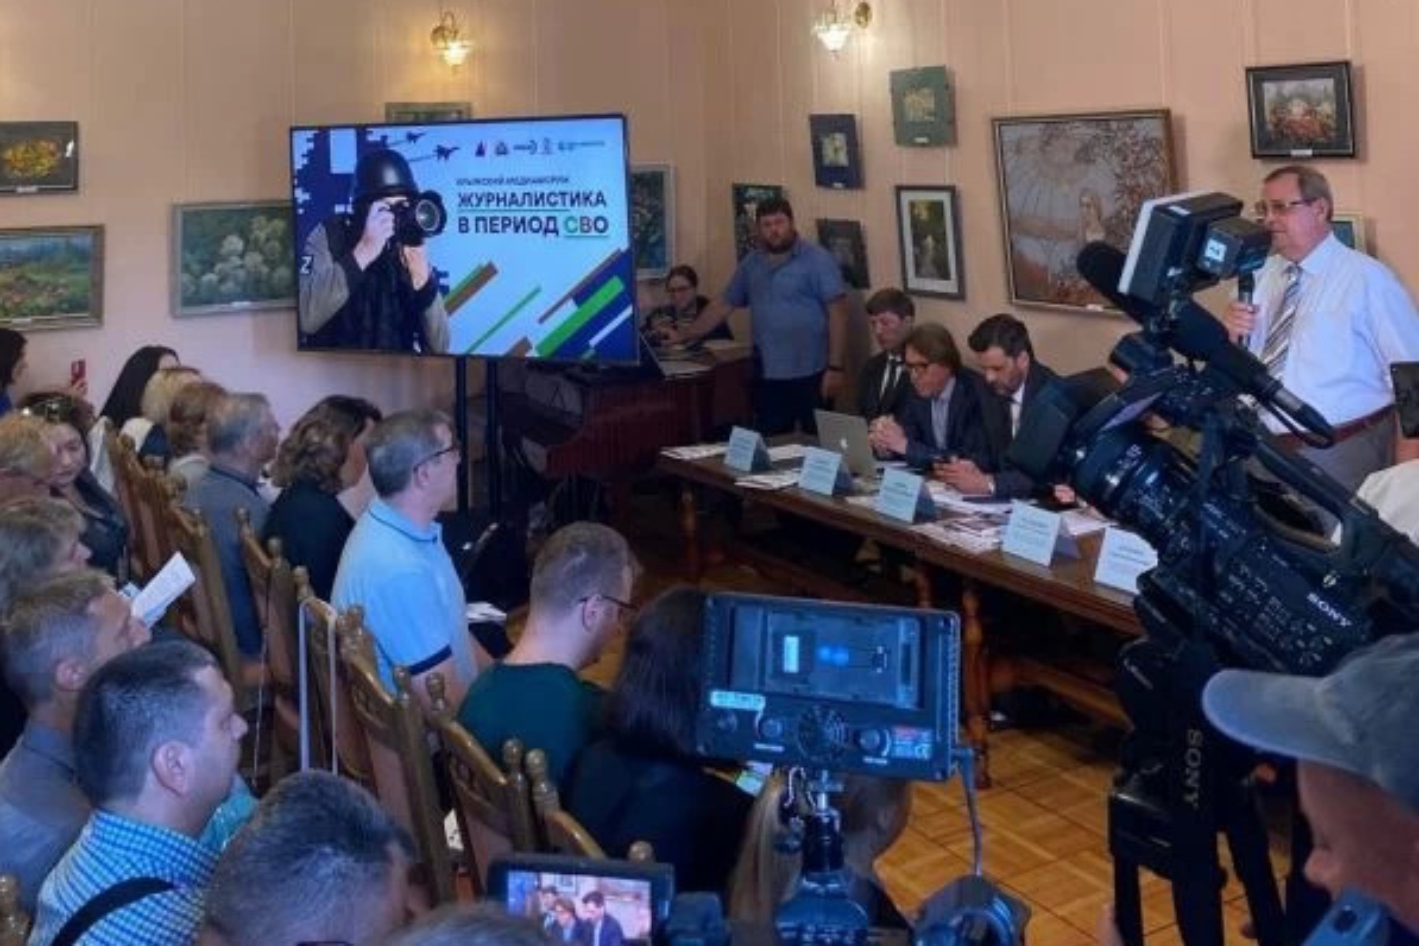 В Крыму открылся первый медиафорум «Журналистика в период СВО»